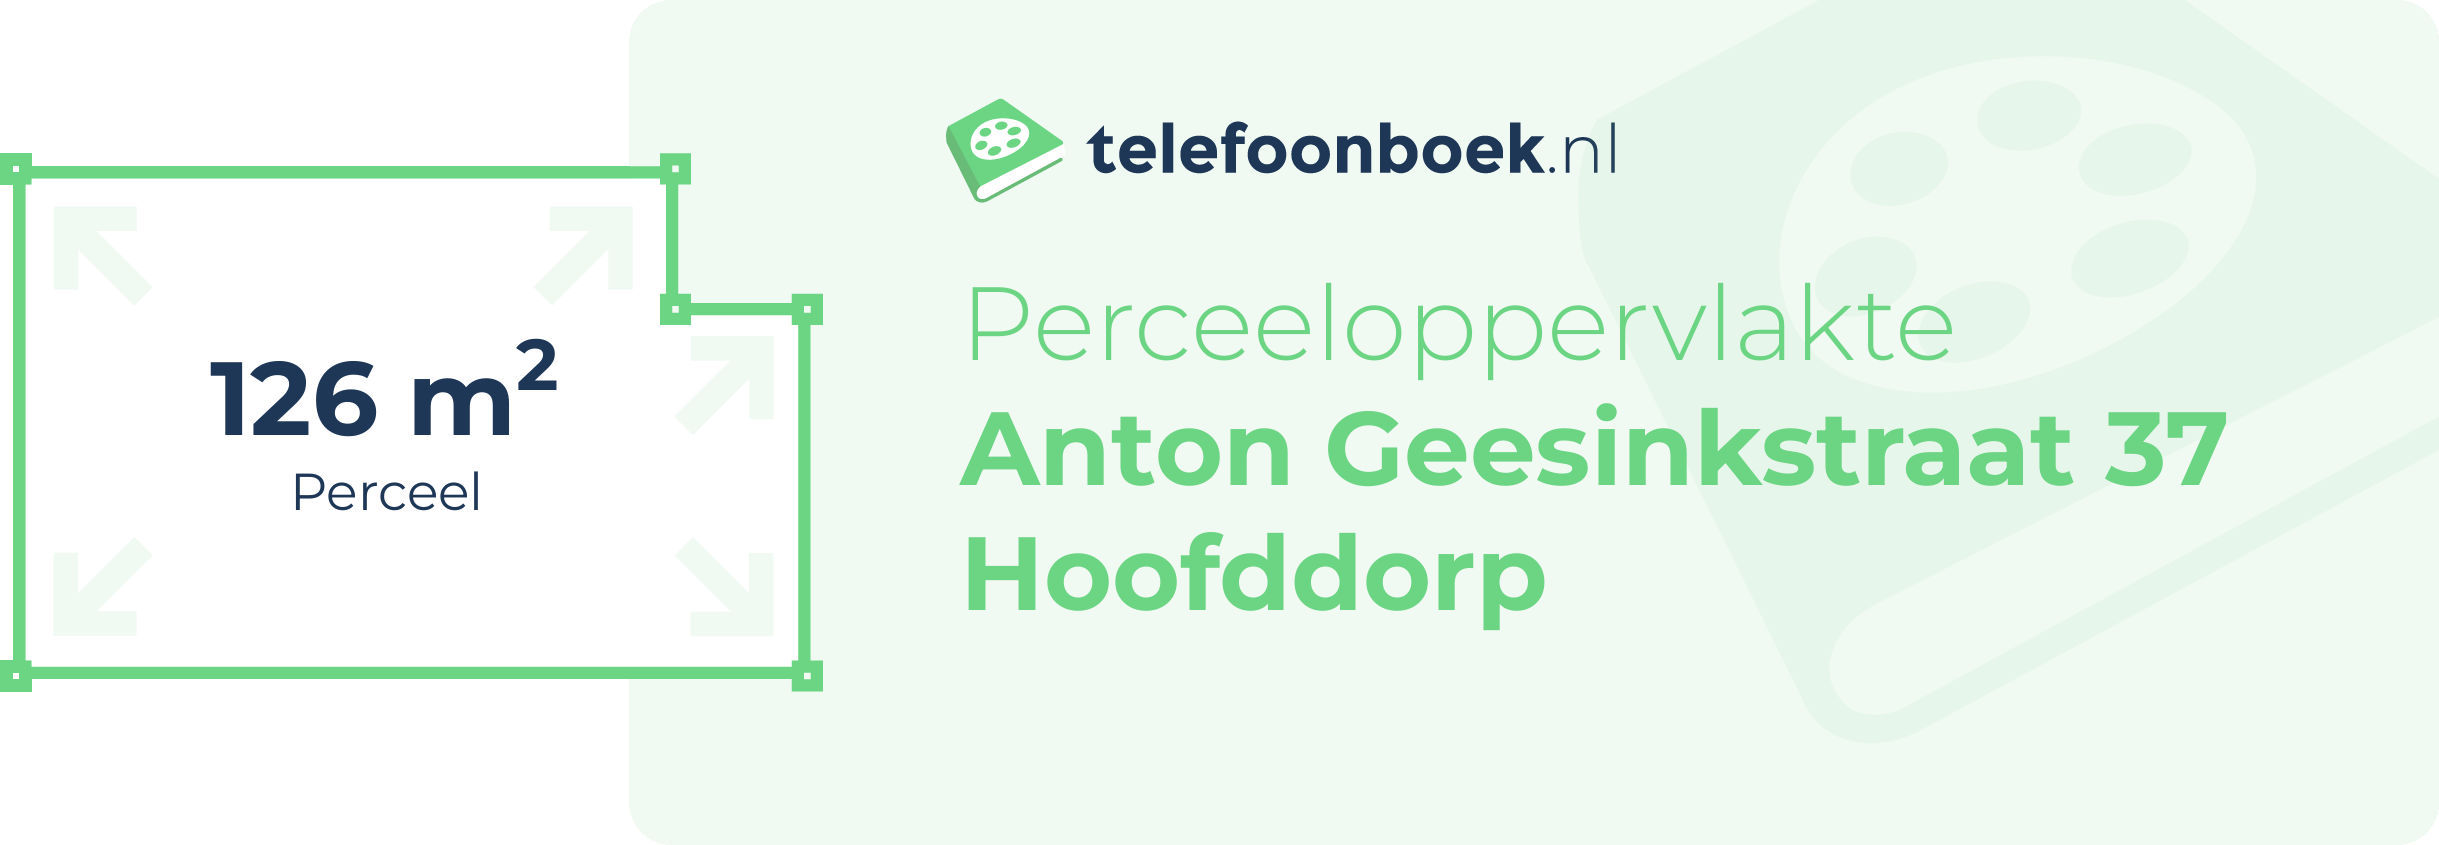 Perceeloppervlakte Anton Geesinkstraat 37 Hoofddorp